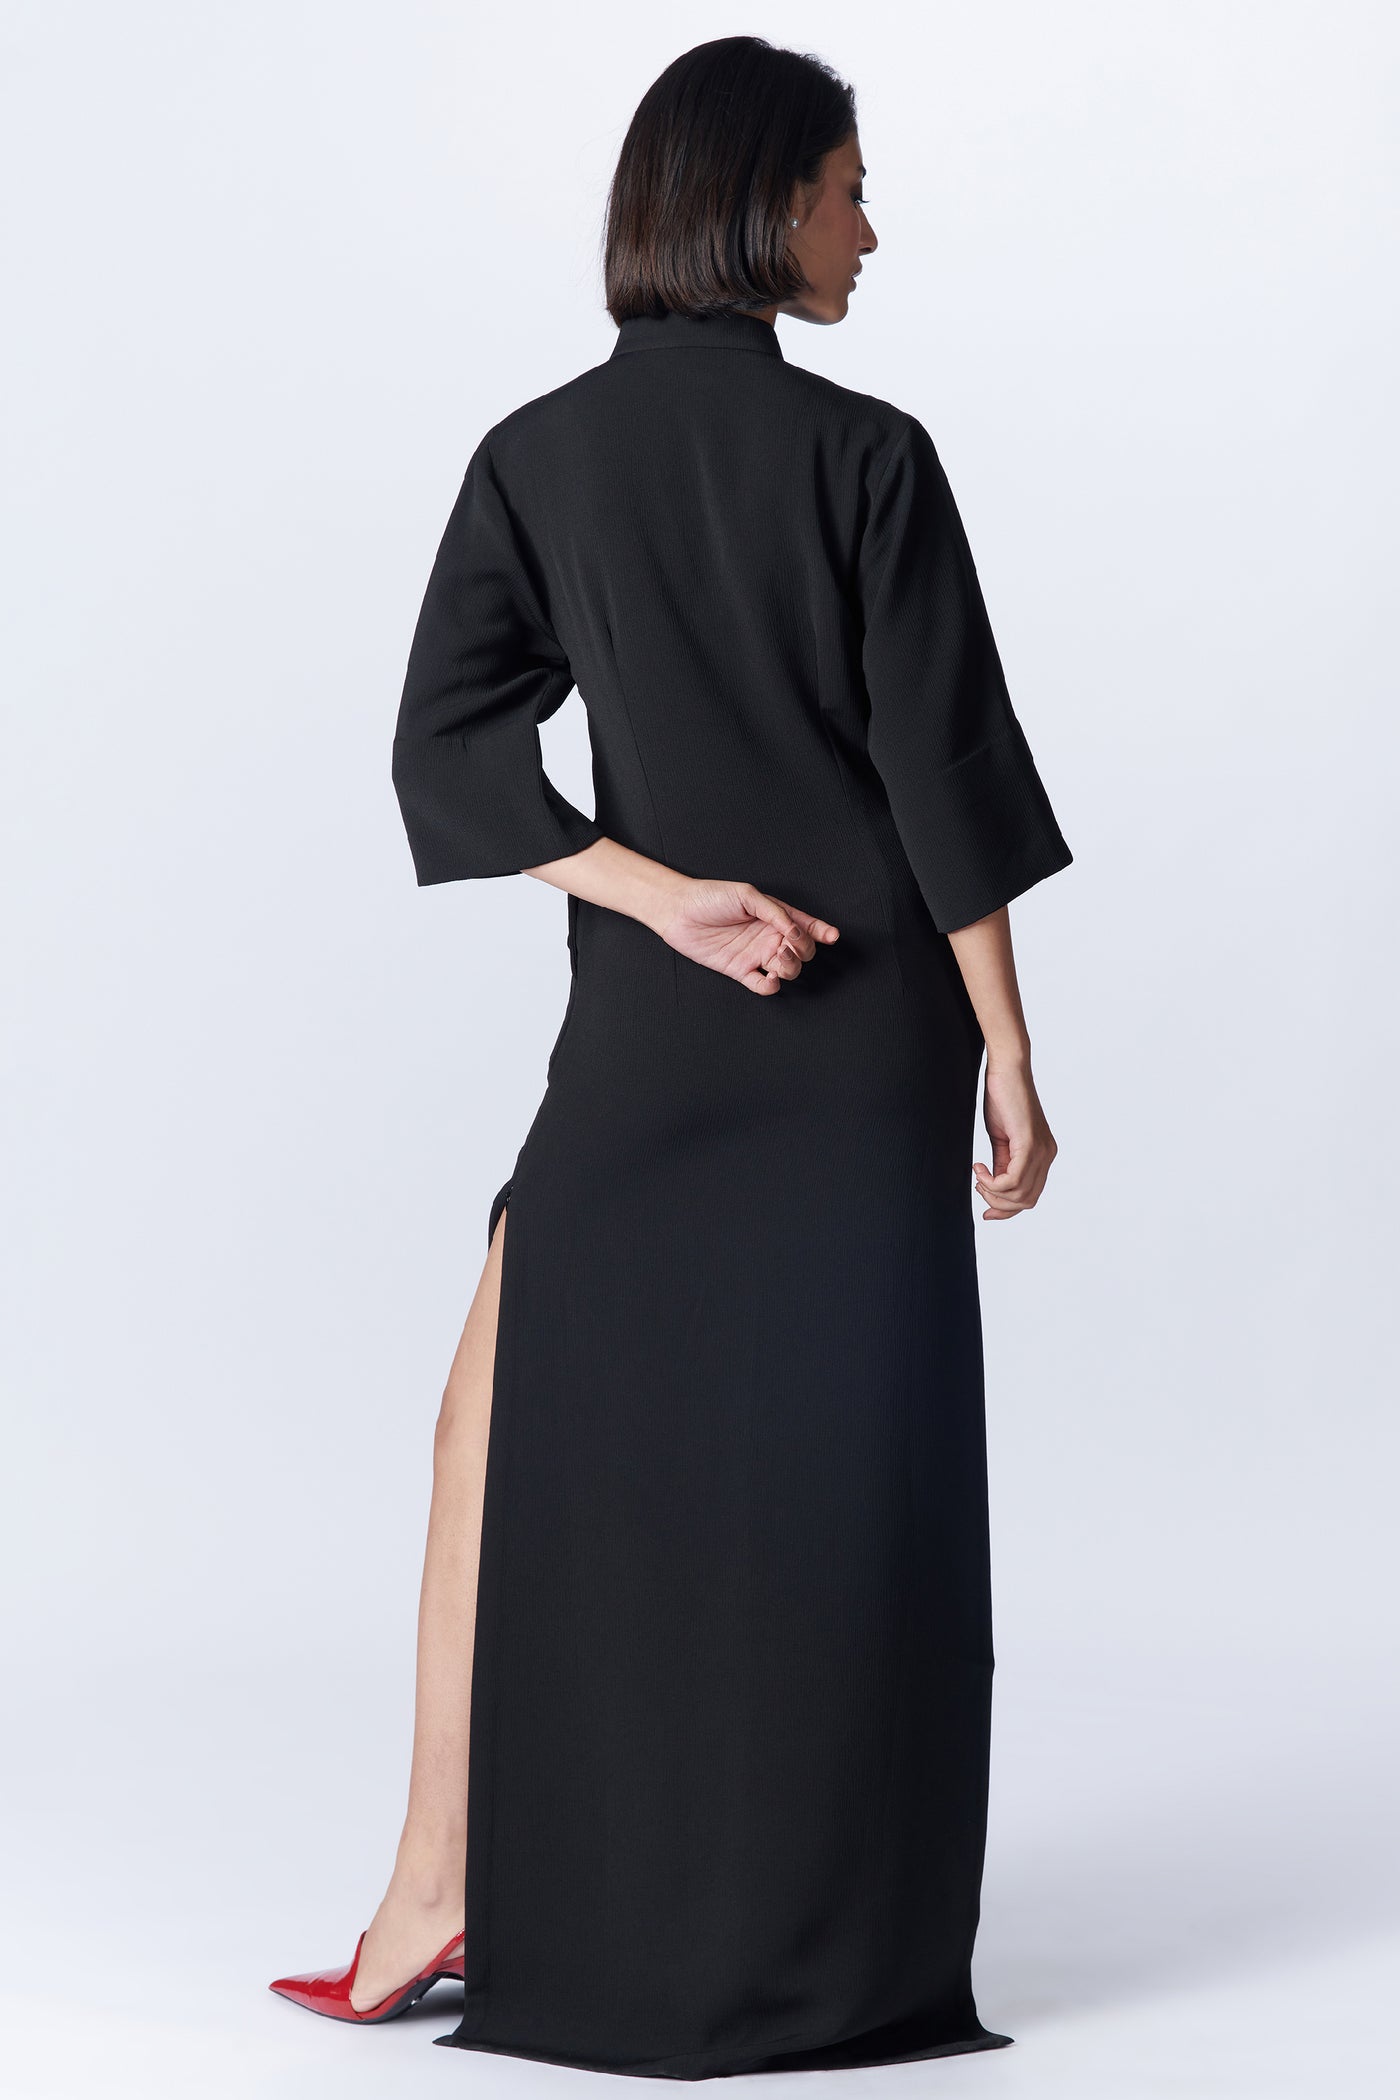 SN By Shantanu Nikhil SNCC Black Tank Maxi dress indian designer wear online shopping melange singapore